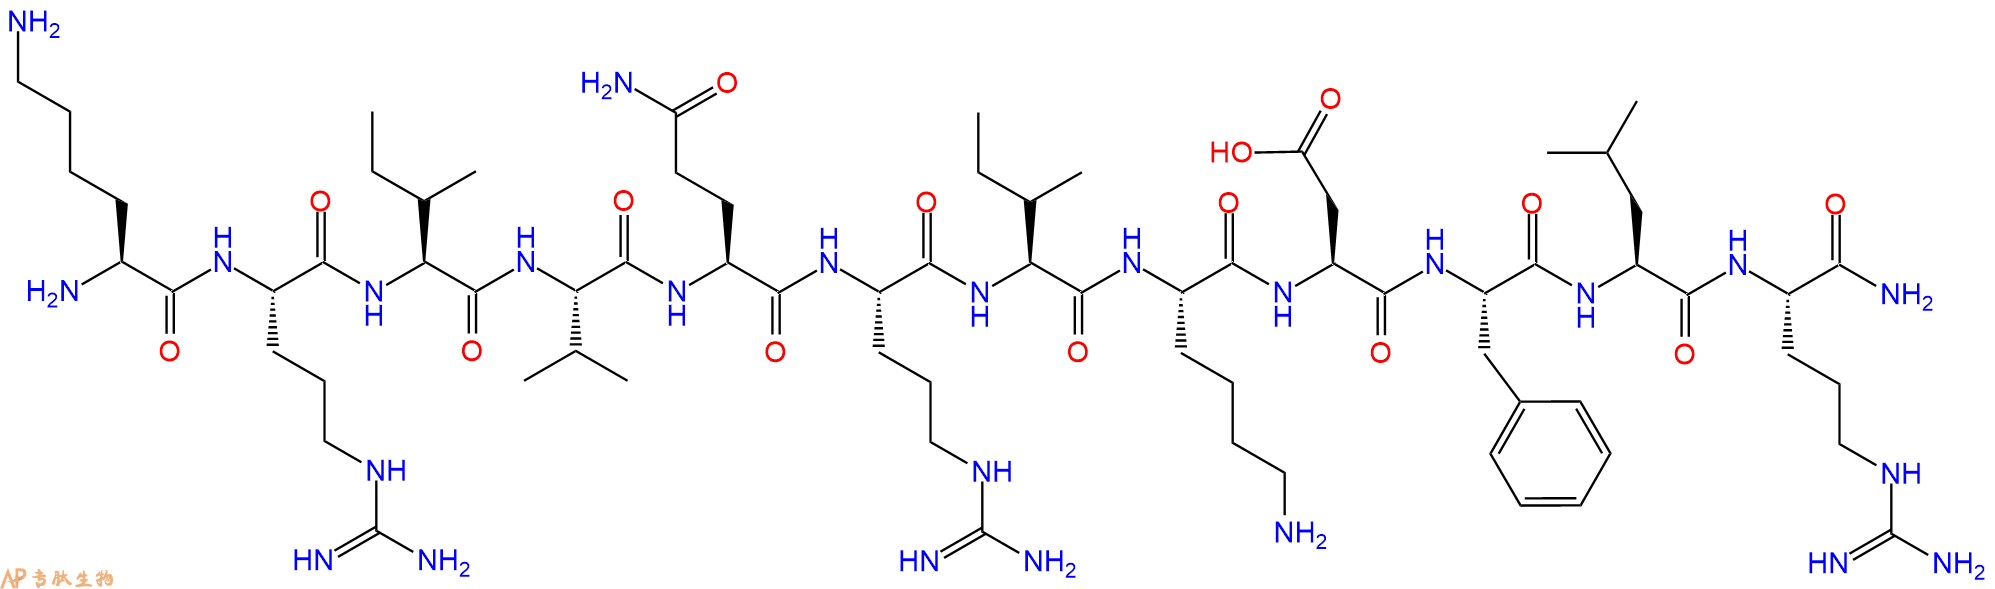 专肽生物产品KR-12 (human), KR-12 amide (human)1218951-51-9